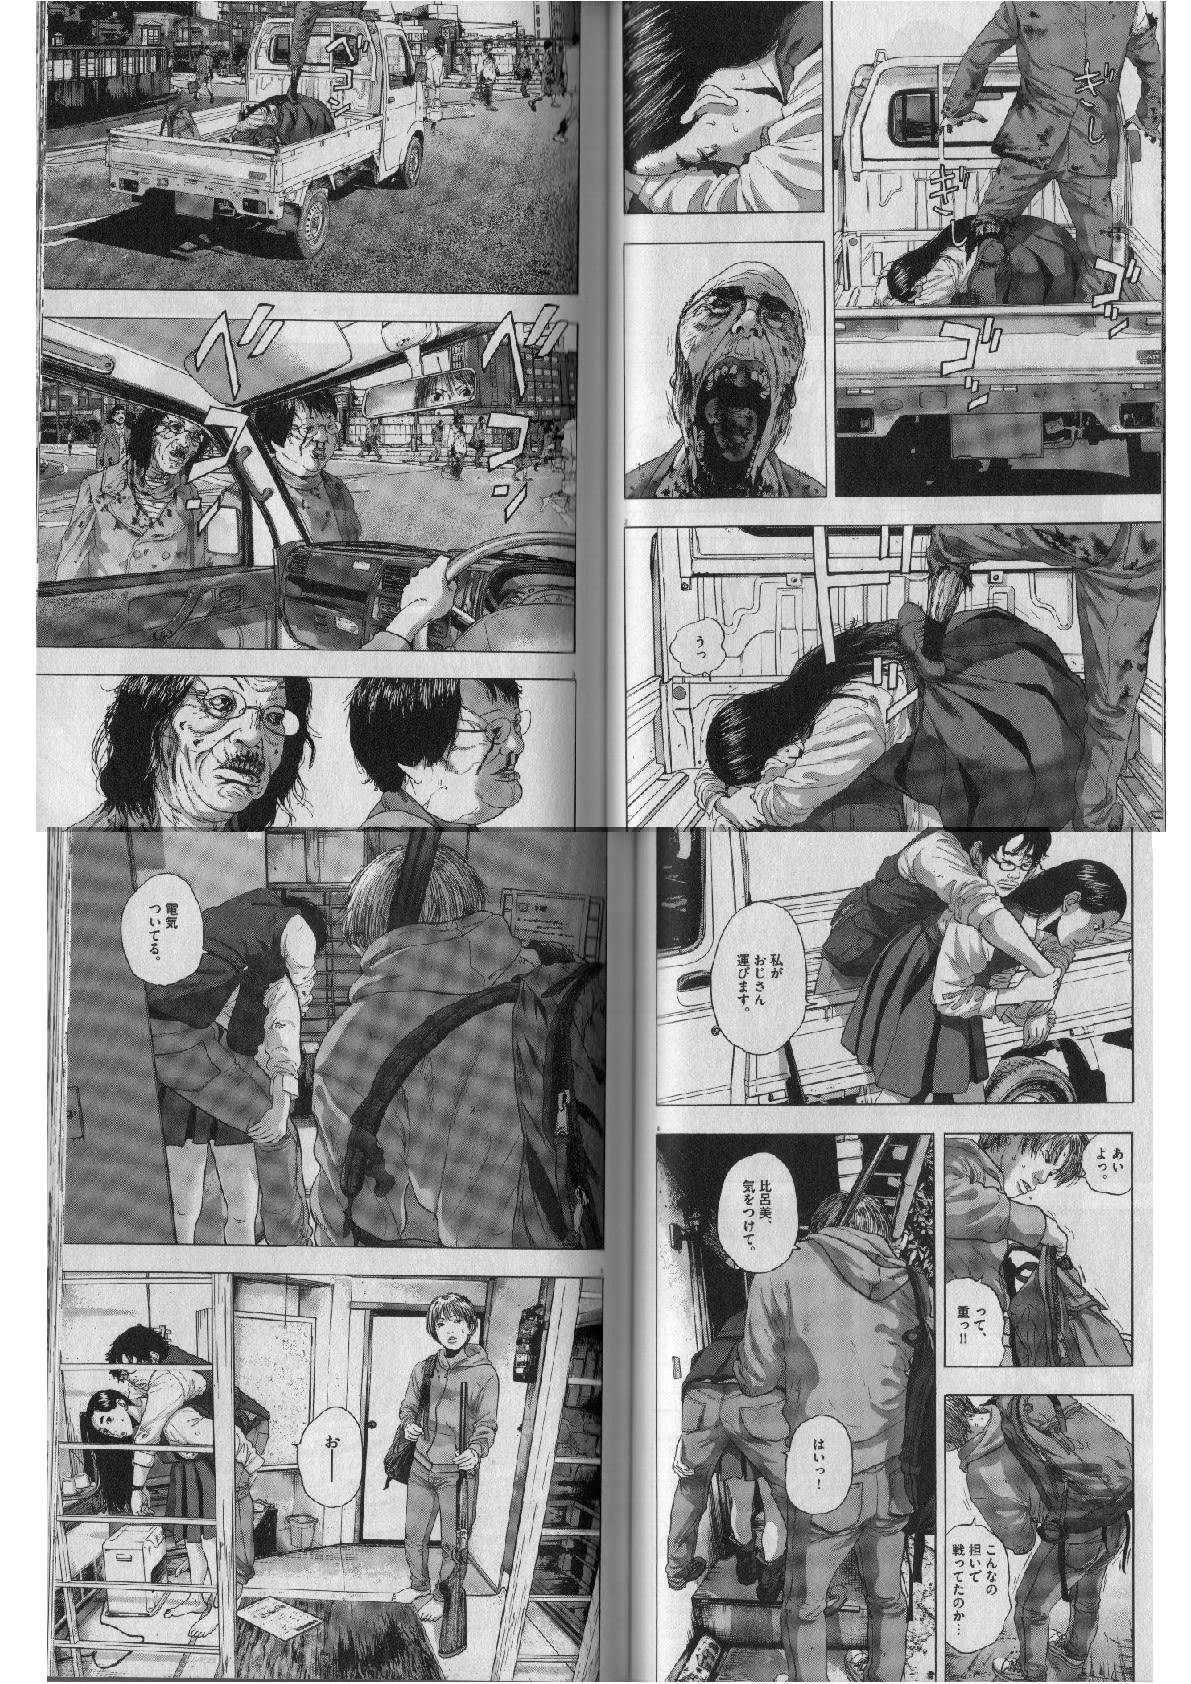 アイアムアヒーロー クルスとの意識内での戦闘後 心肺停止に陥った英雄を小田さんとひろみで助ける 個人的に気に入った漫画だったり 書籍だったりを気まぐれで紹介するモトブログおじさん